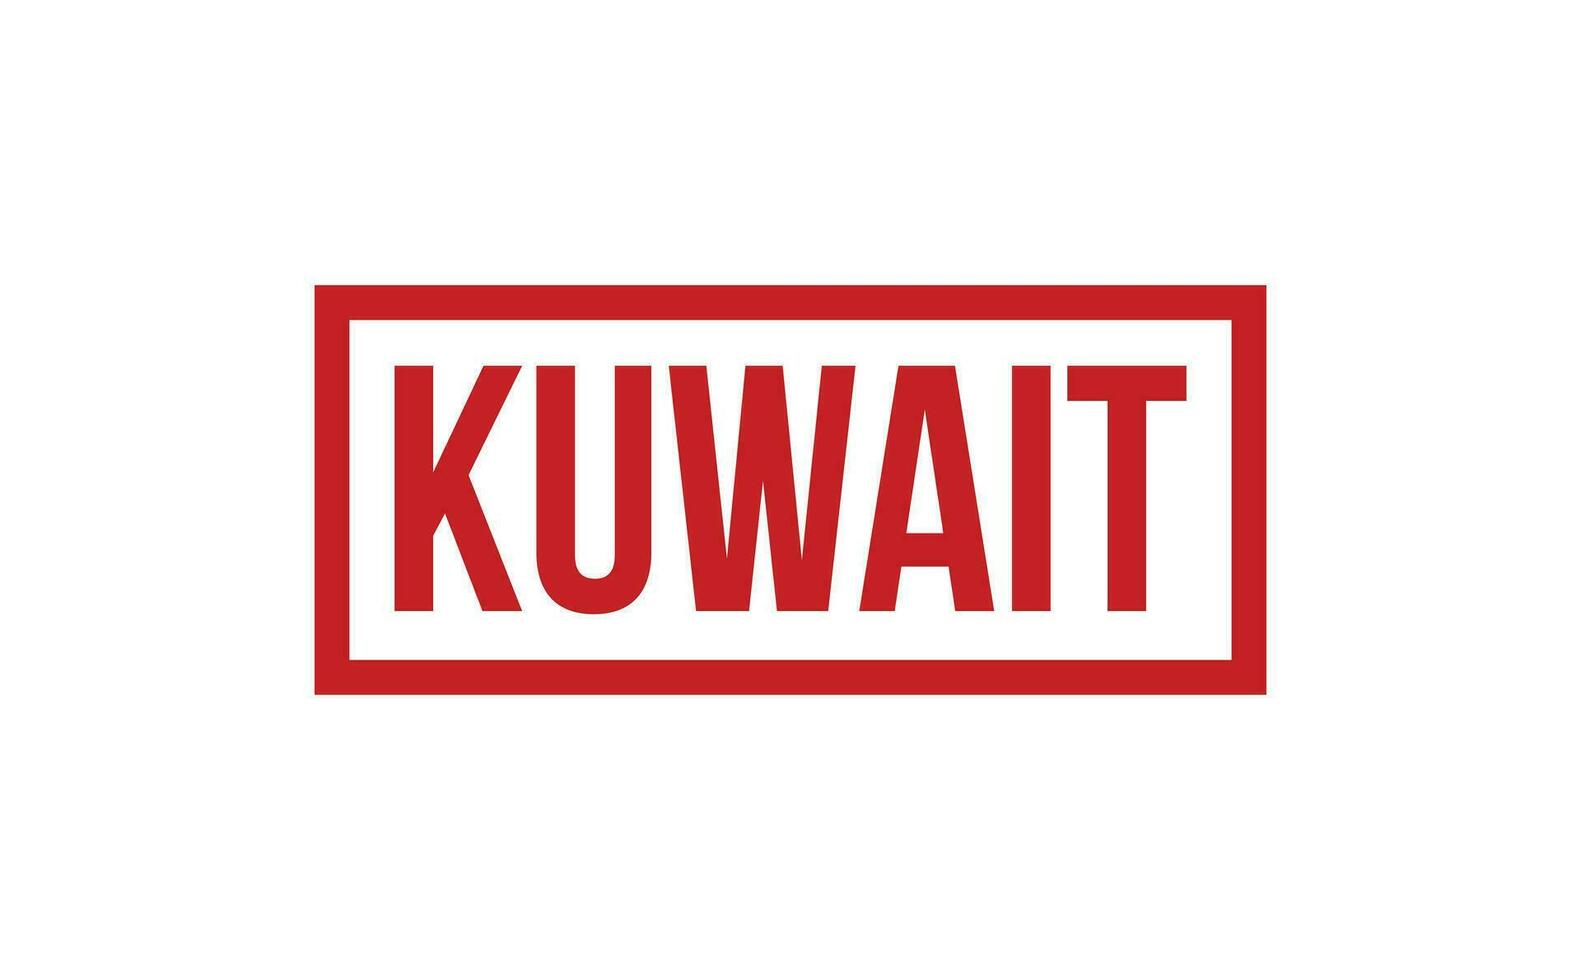 Kuwait Gummi Briefmarke Siegel Vektor